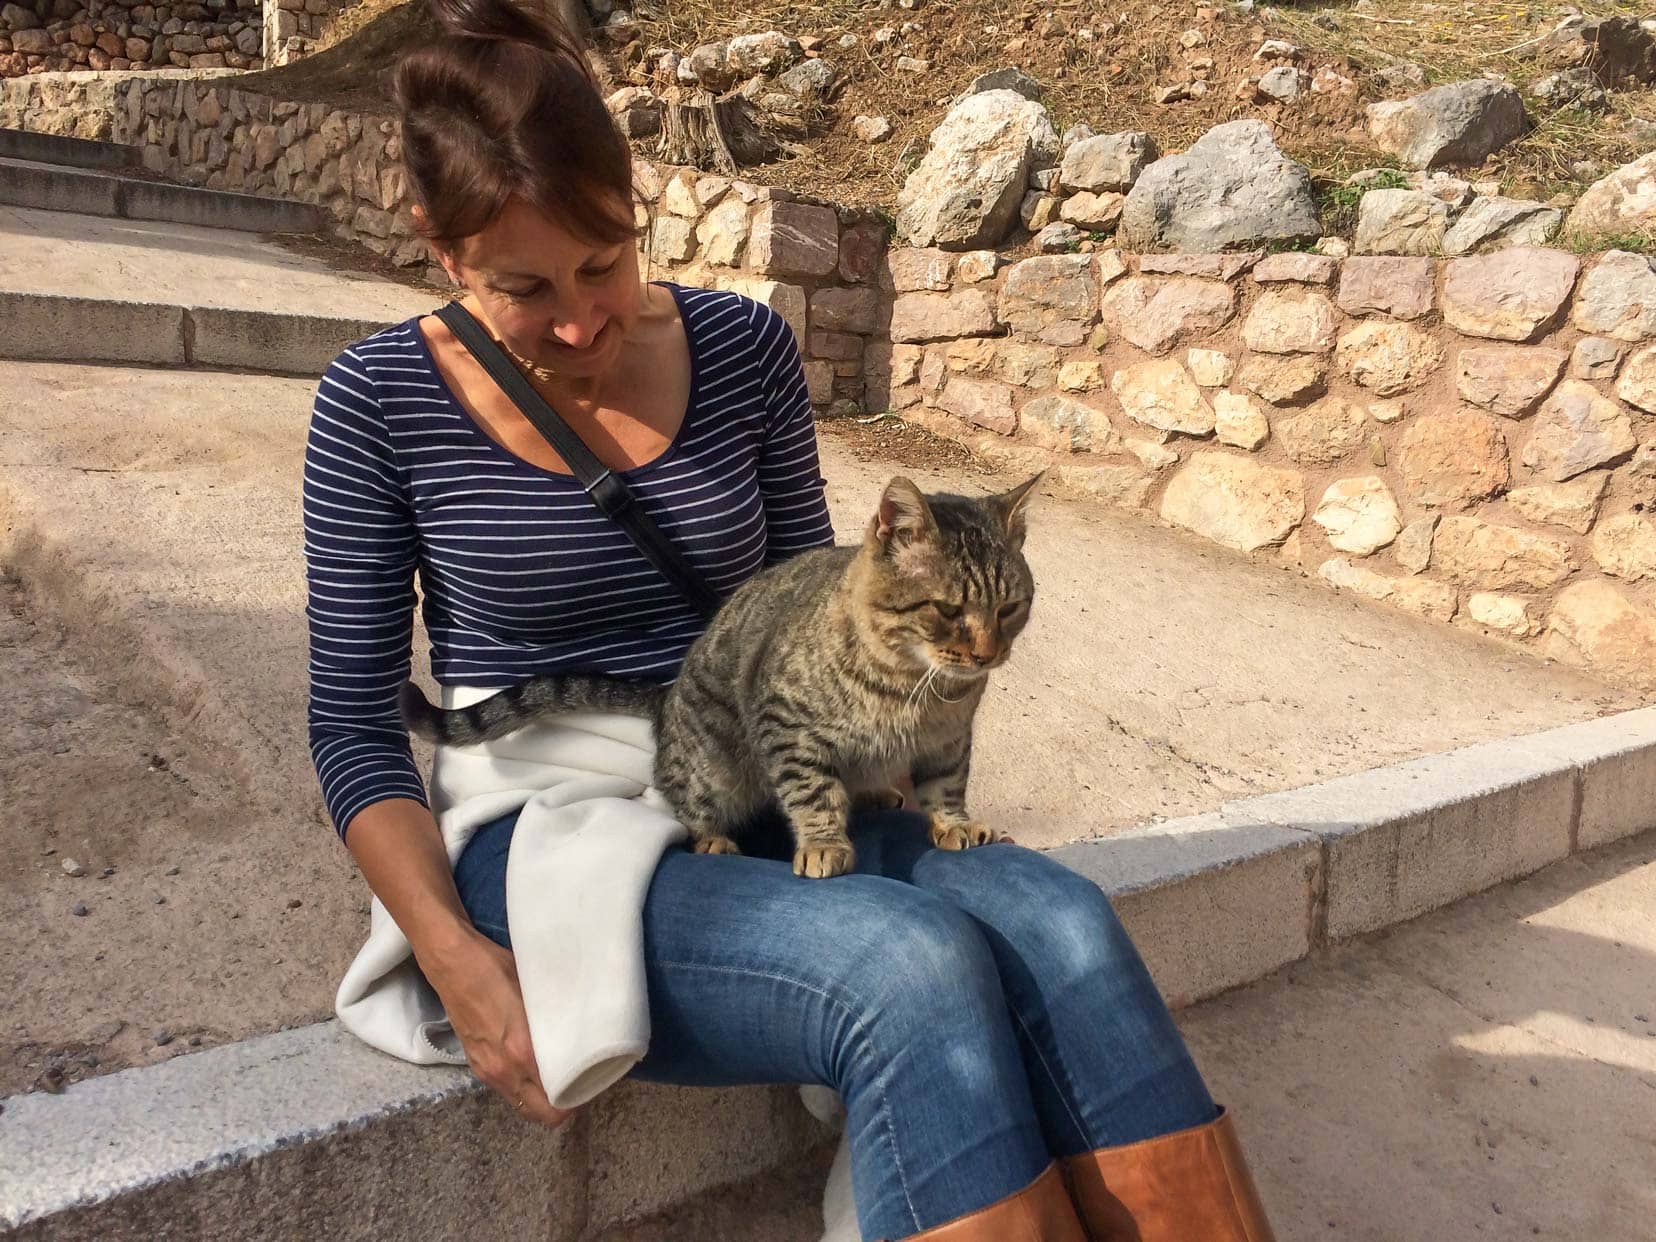 Shelley with a cat het lap at-delphi ruins 